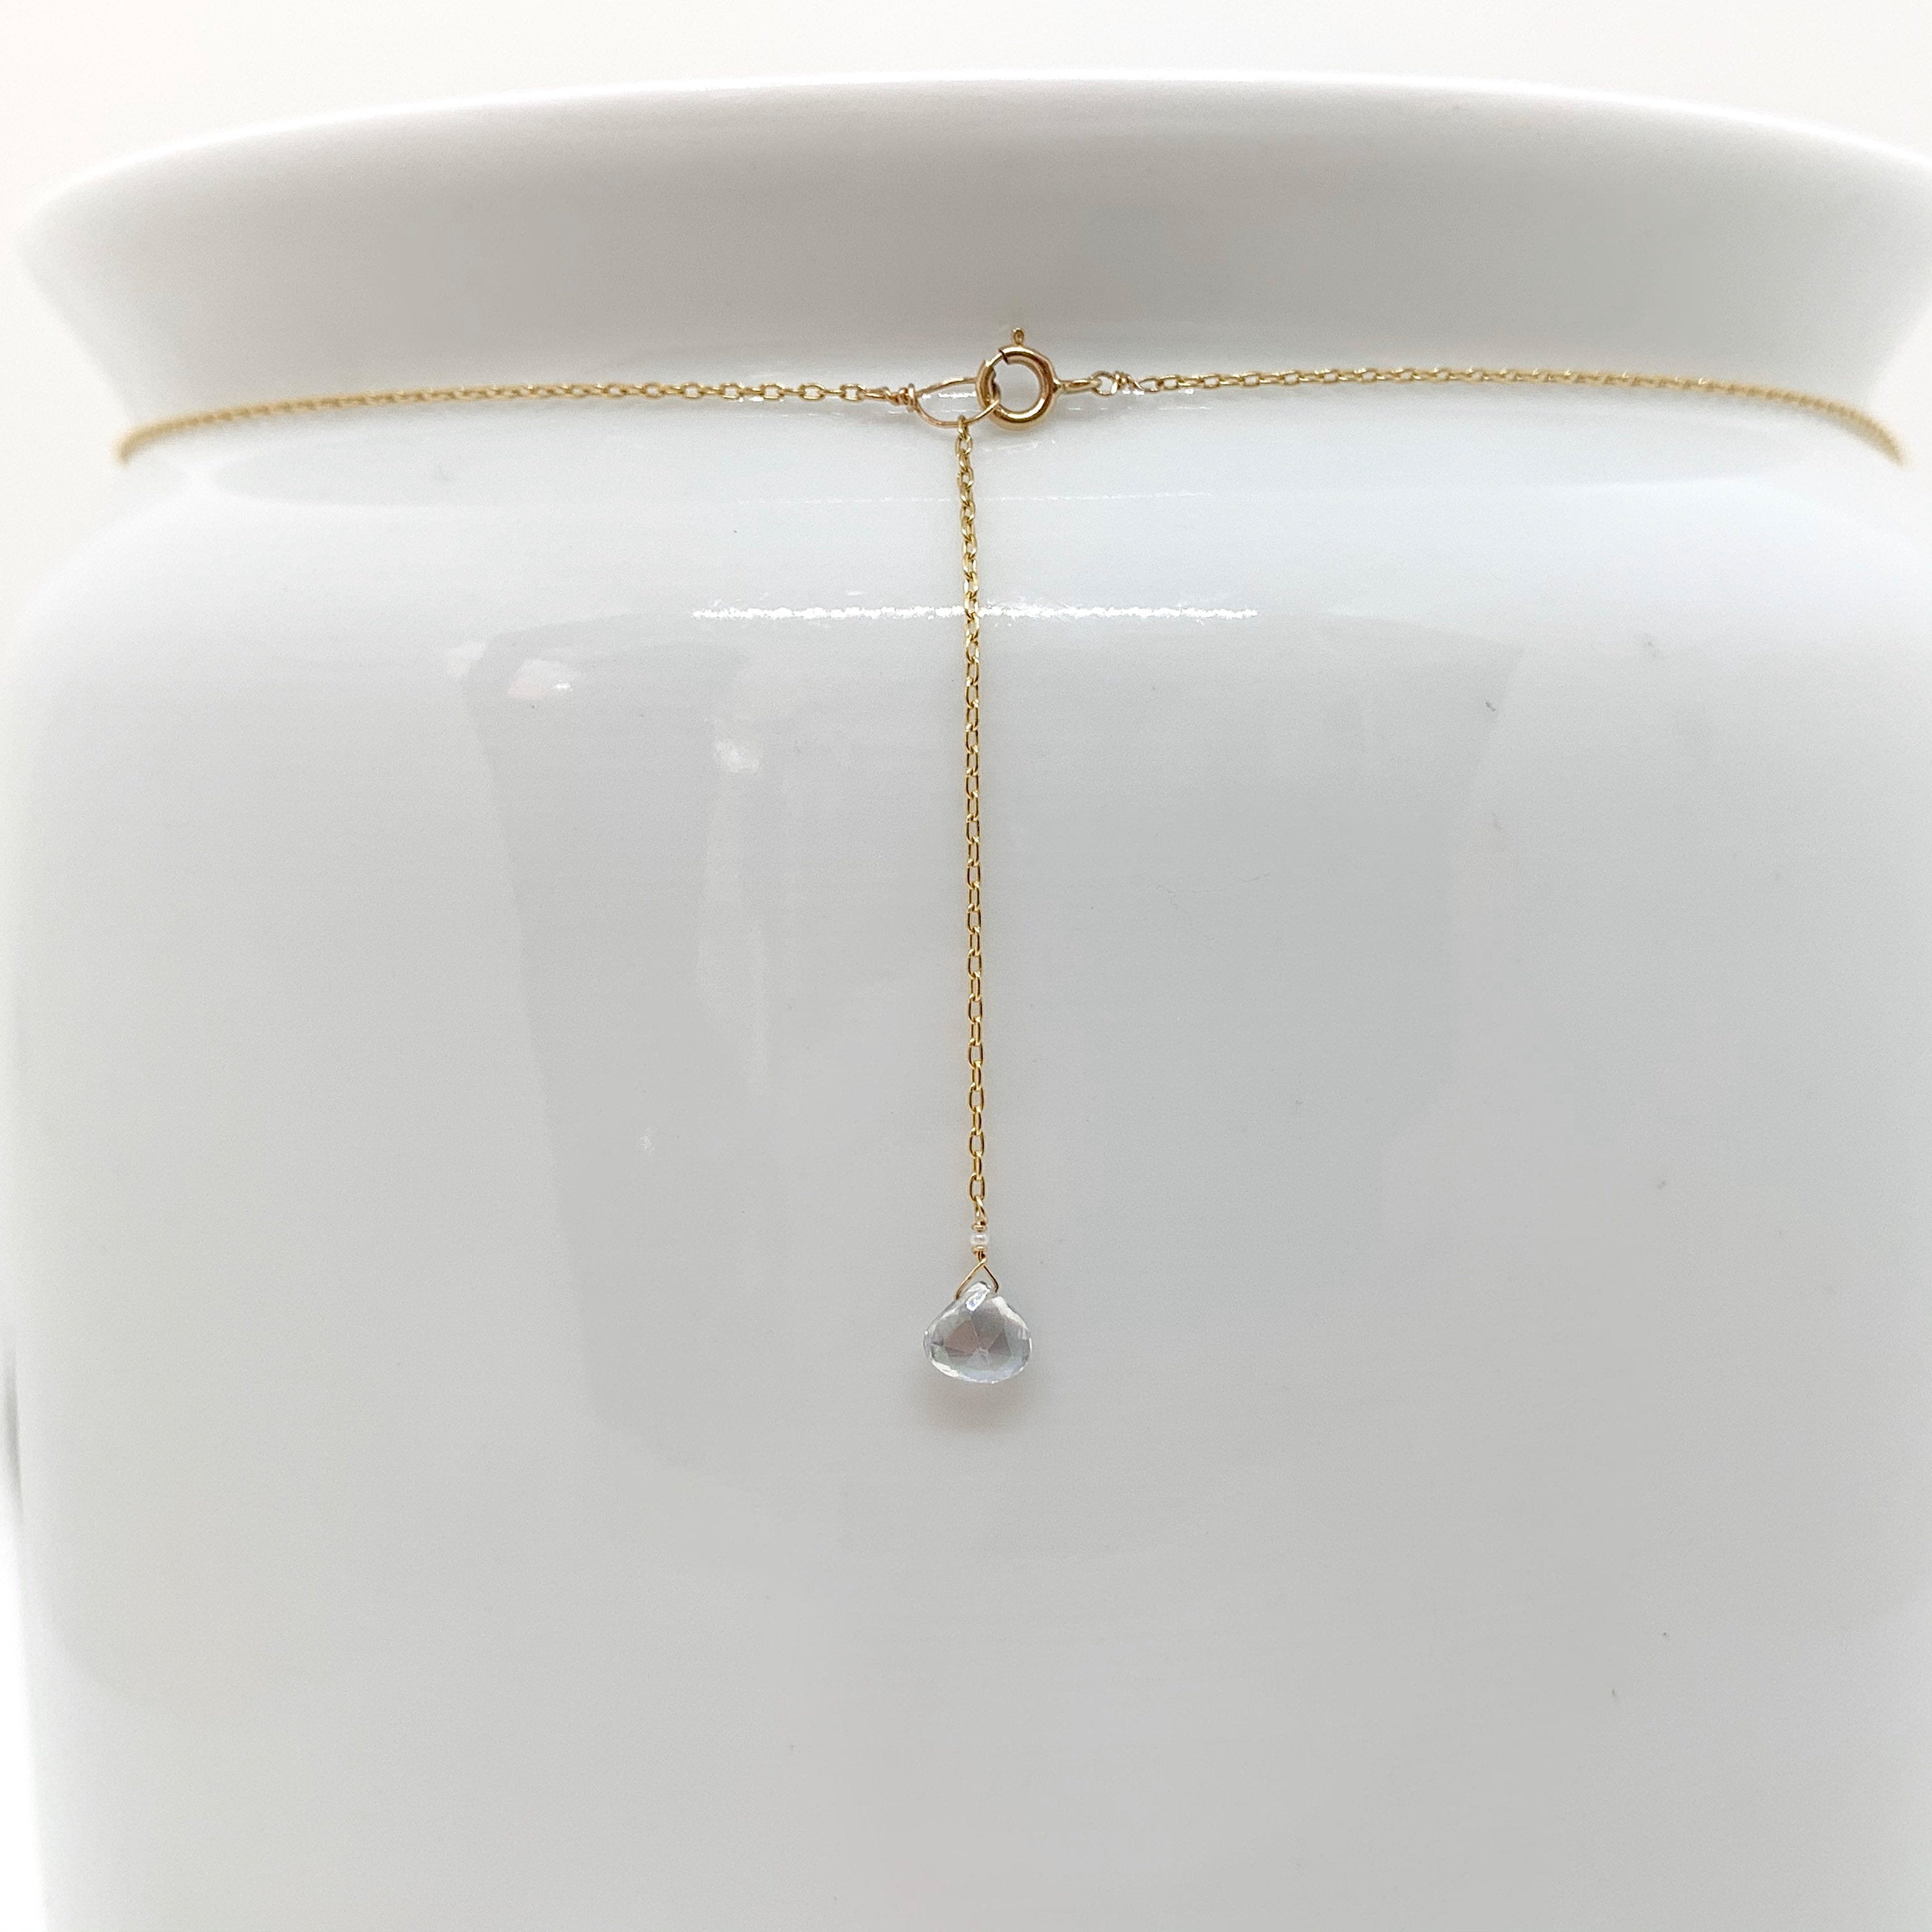 MYSTIC TOPAZ NECKLACE - Gold Topaz Necklace - 14 K Gold Chain With Mystic Topaz Necklace - Gift For Women - Modern Style Pendent